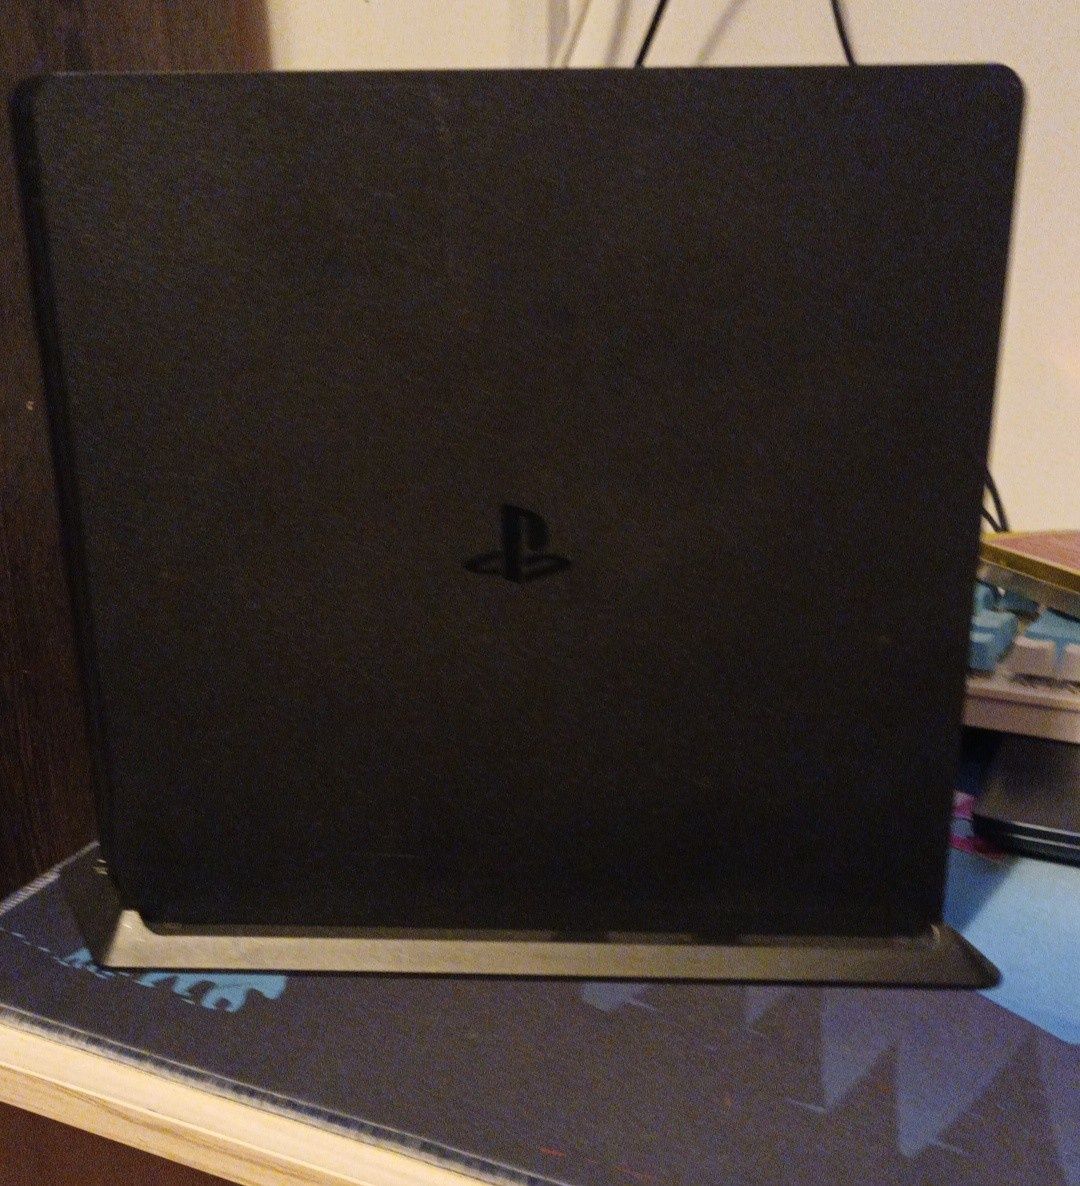 Vand PlayStation 4 in stare buna de functionare cu un controller.